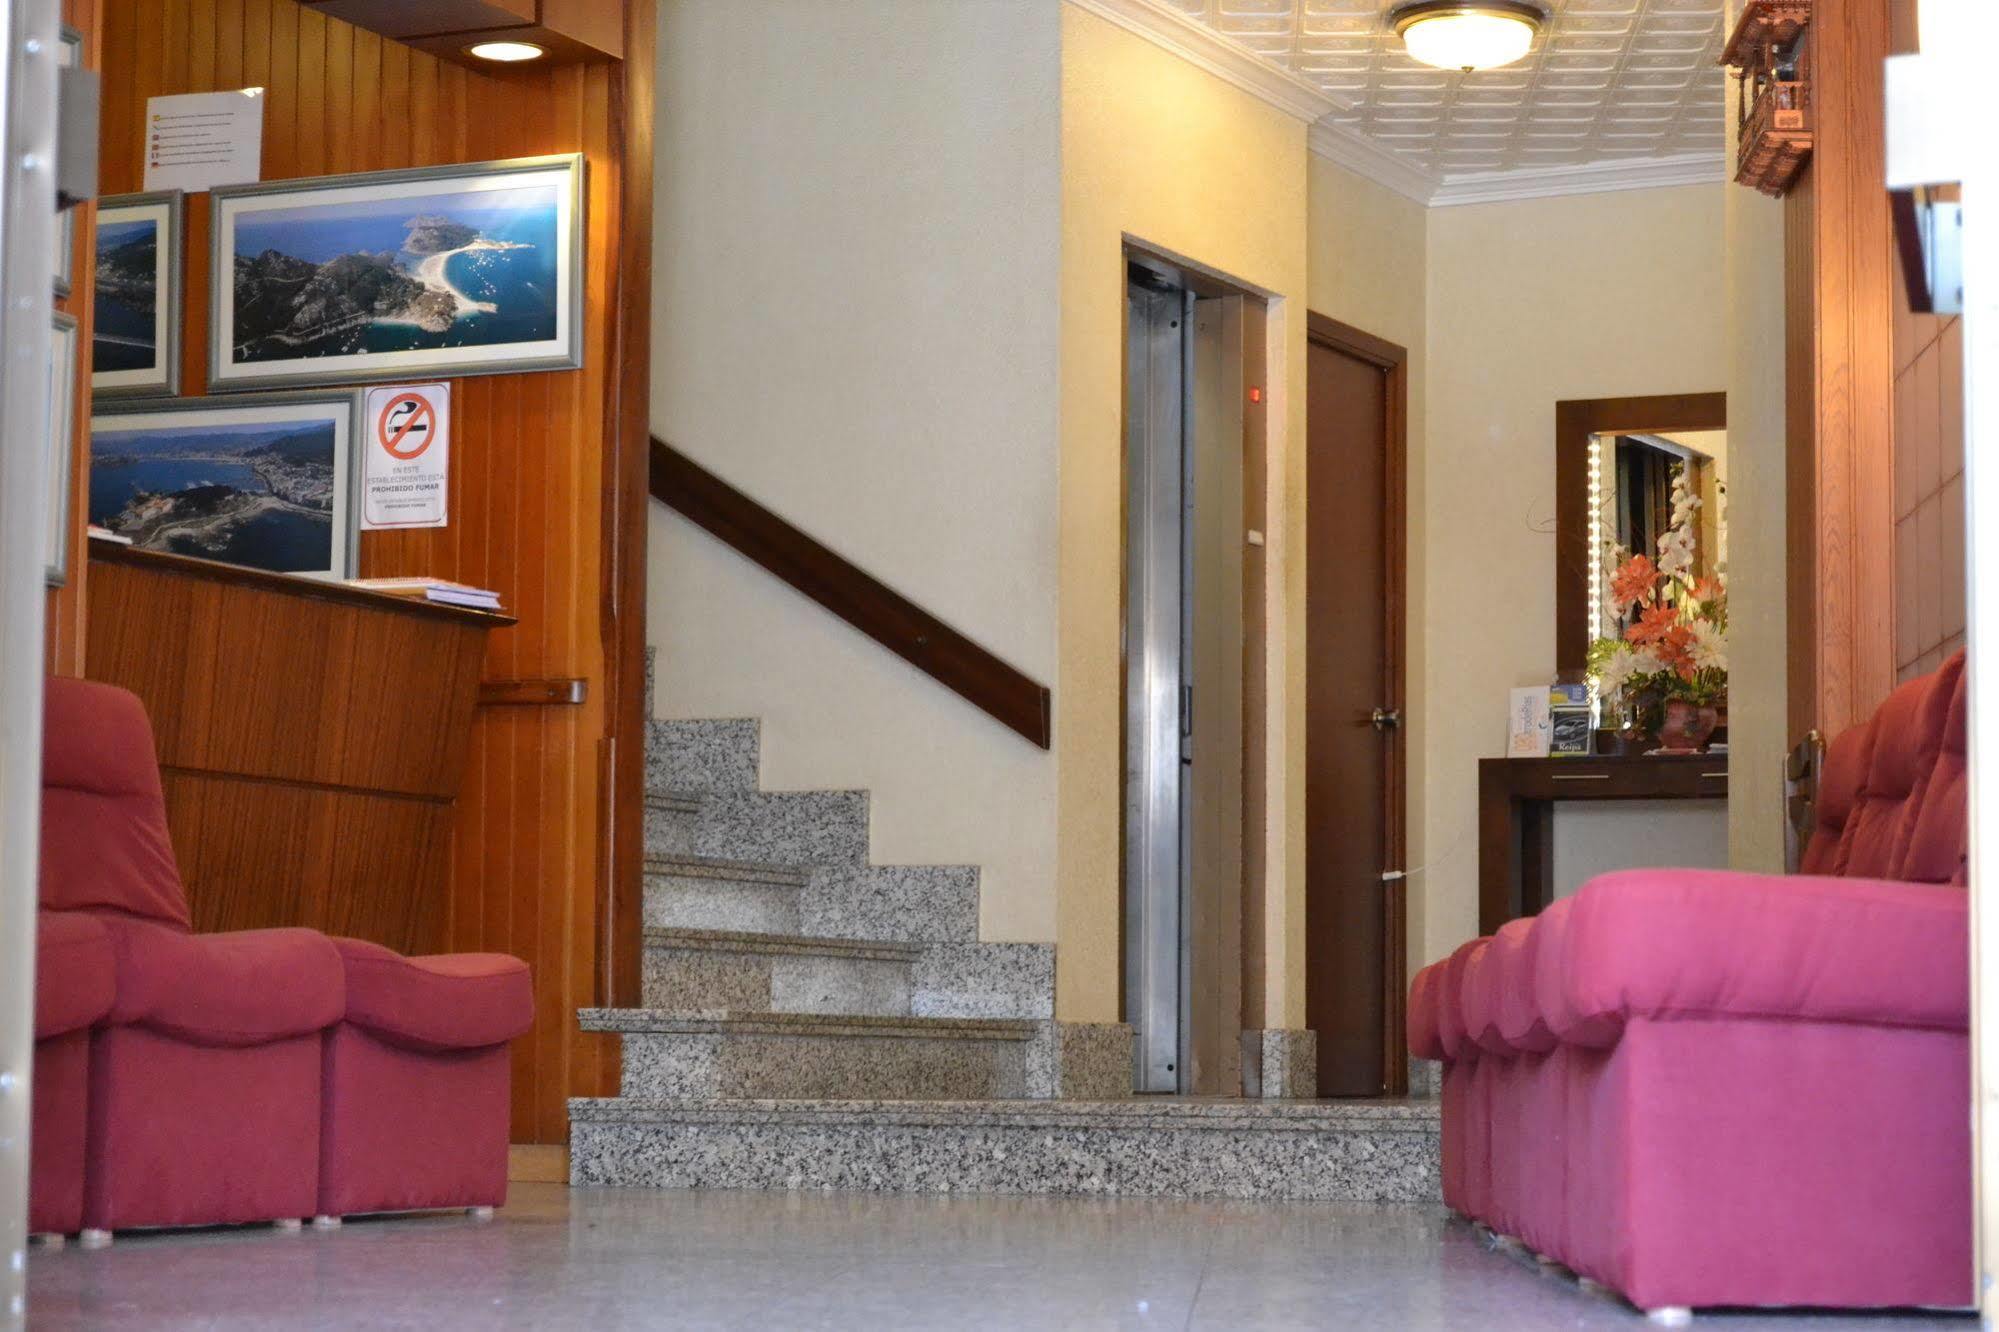 Hotel Nuevo Cachalote Portonovo Zewnętrze zdjęcie